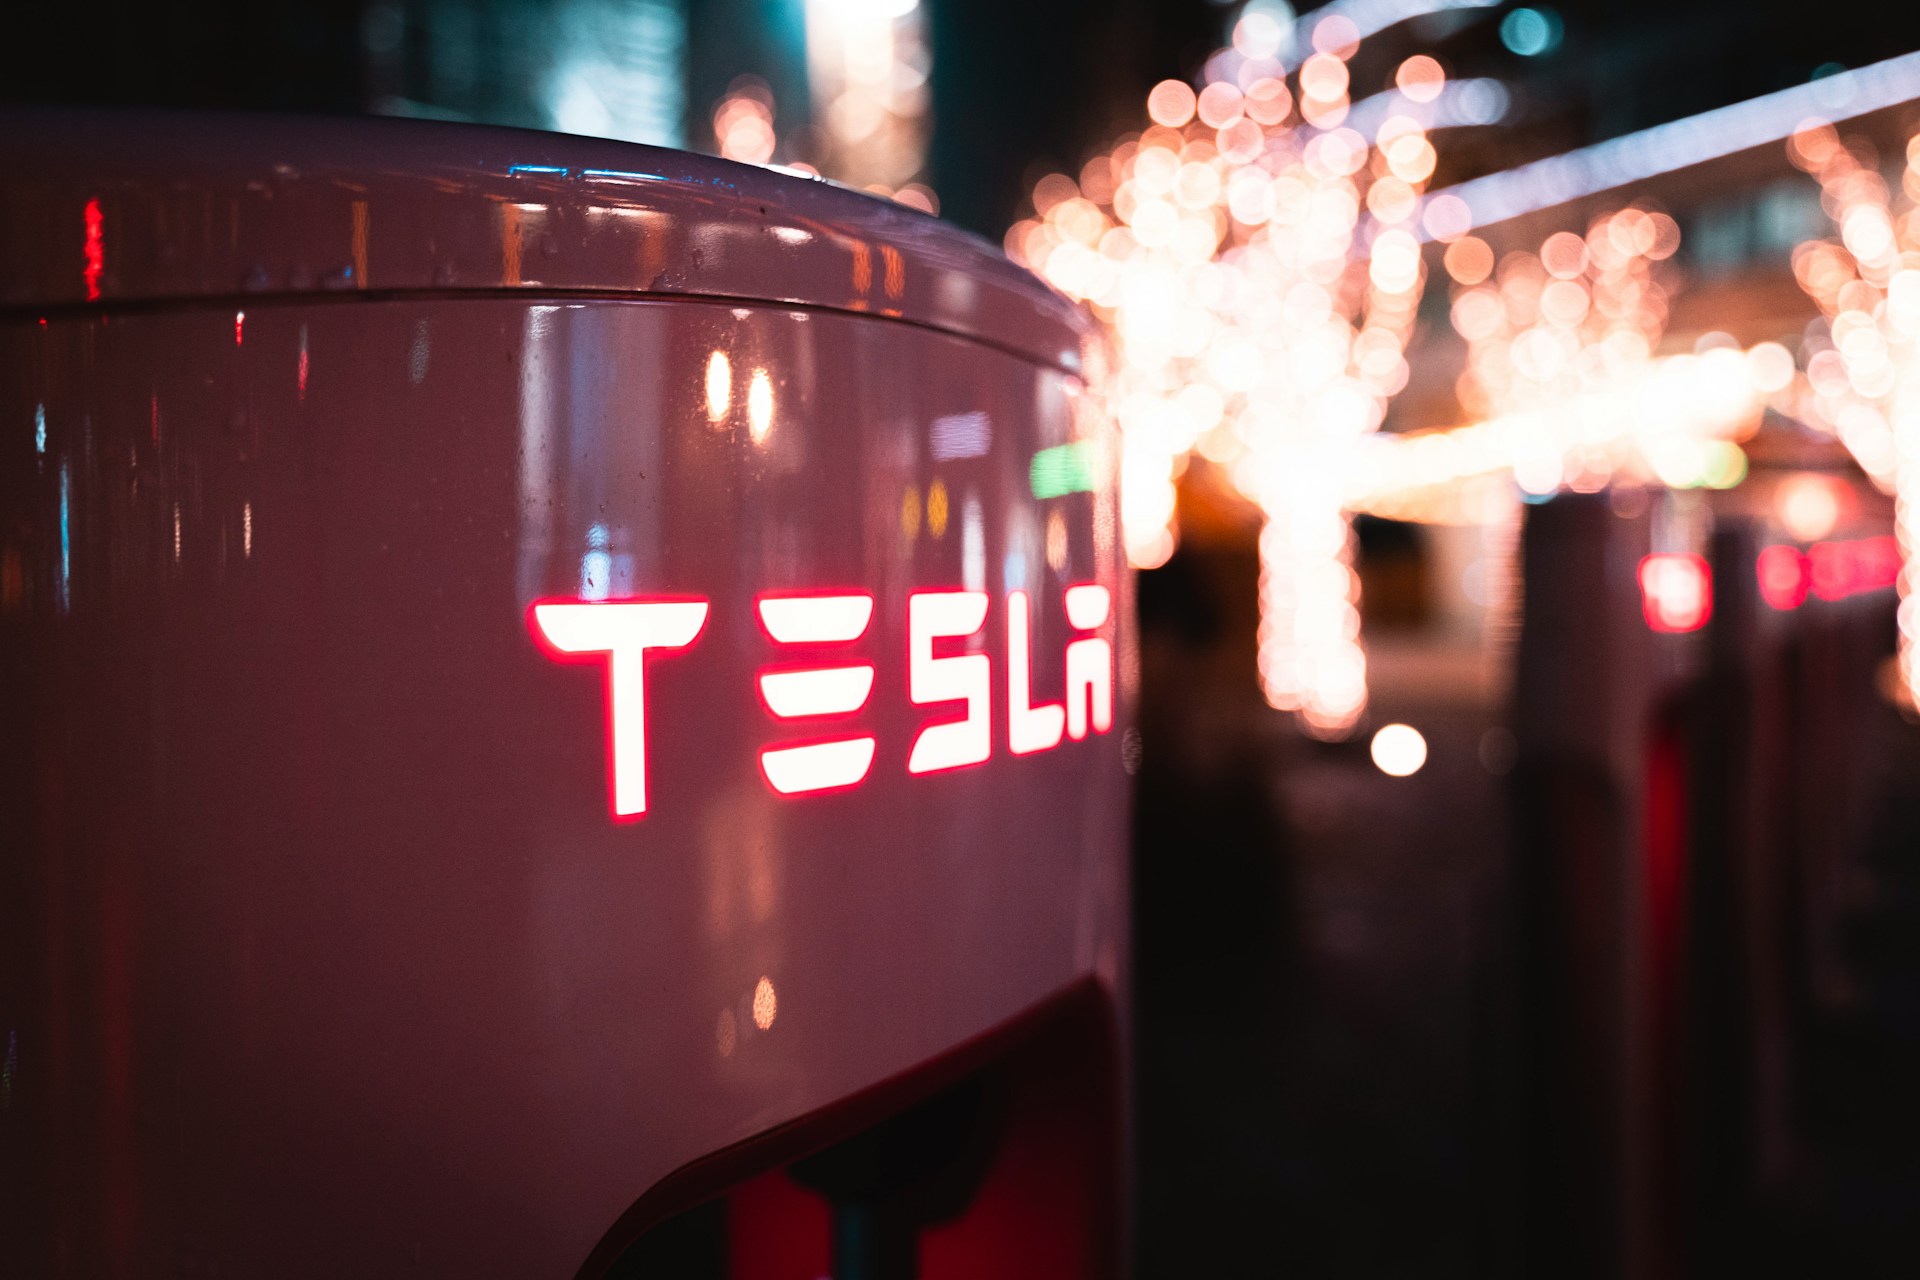 Tesla angażuje Apple w spór sądowy dotyczący śmiertelnego wypadku autopilota